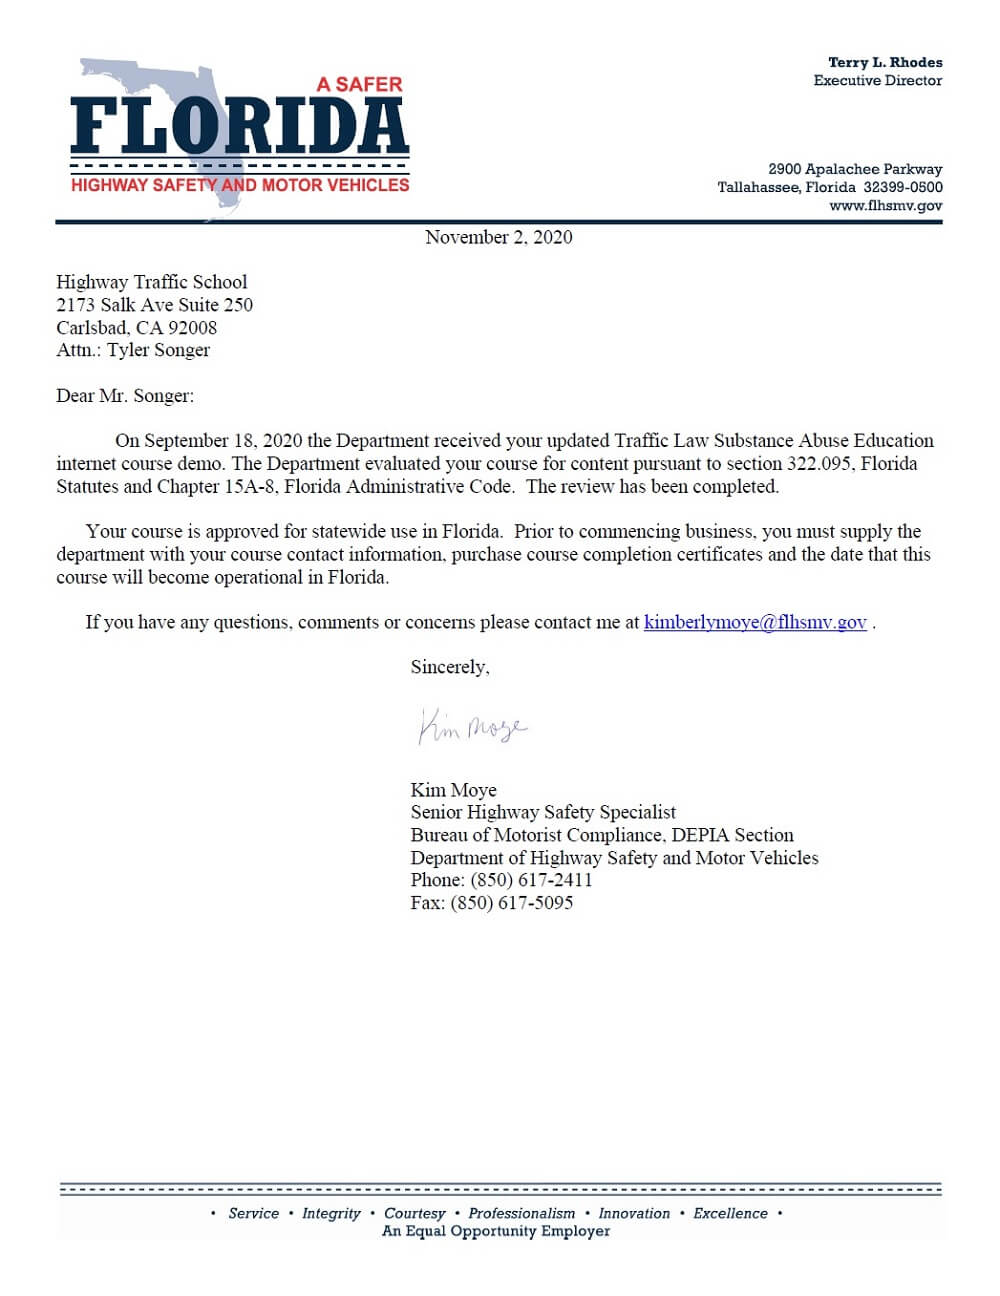 Florida DHSMV TLSAE certification letter